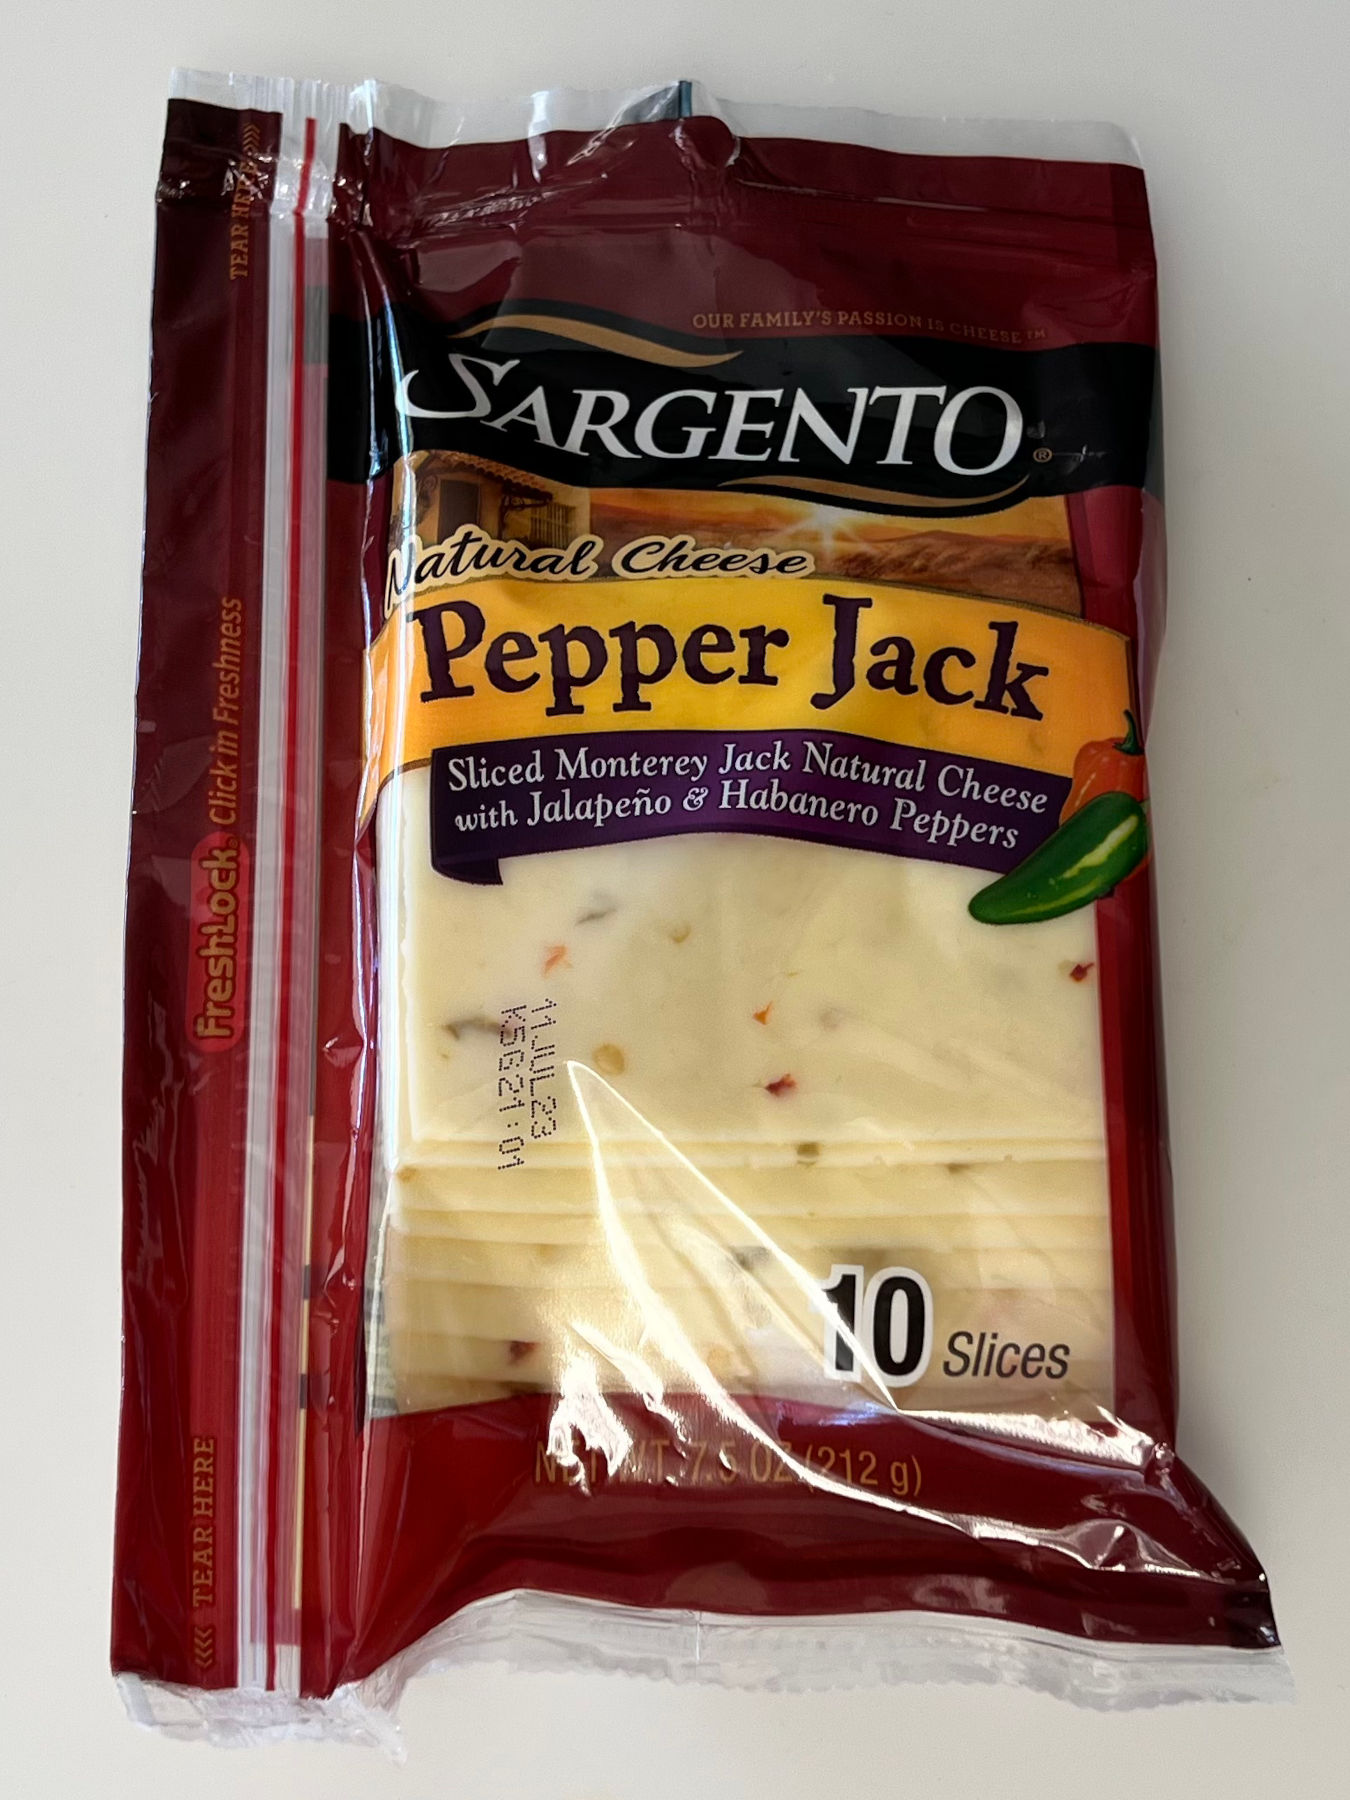 Pepper Jack Sargento